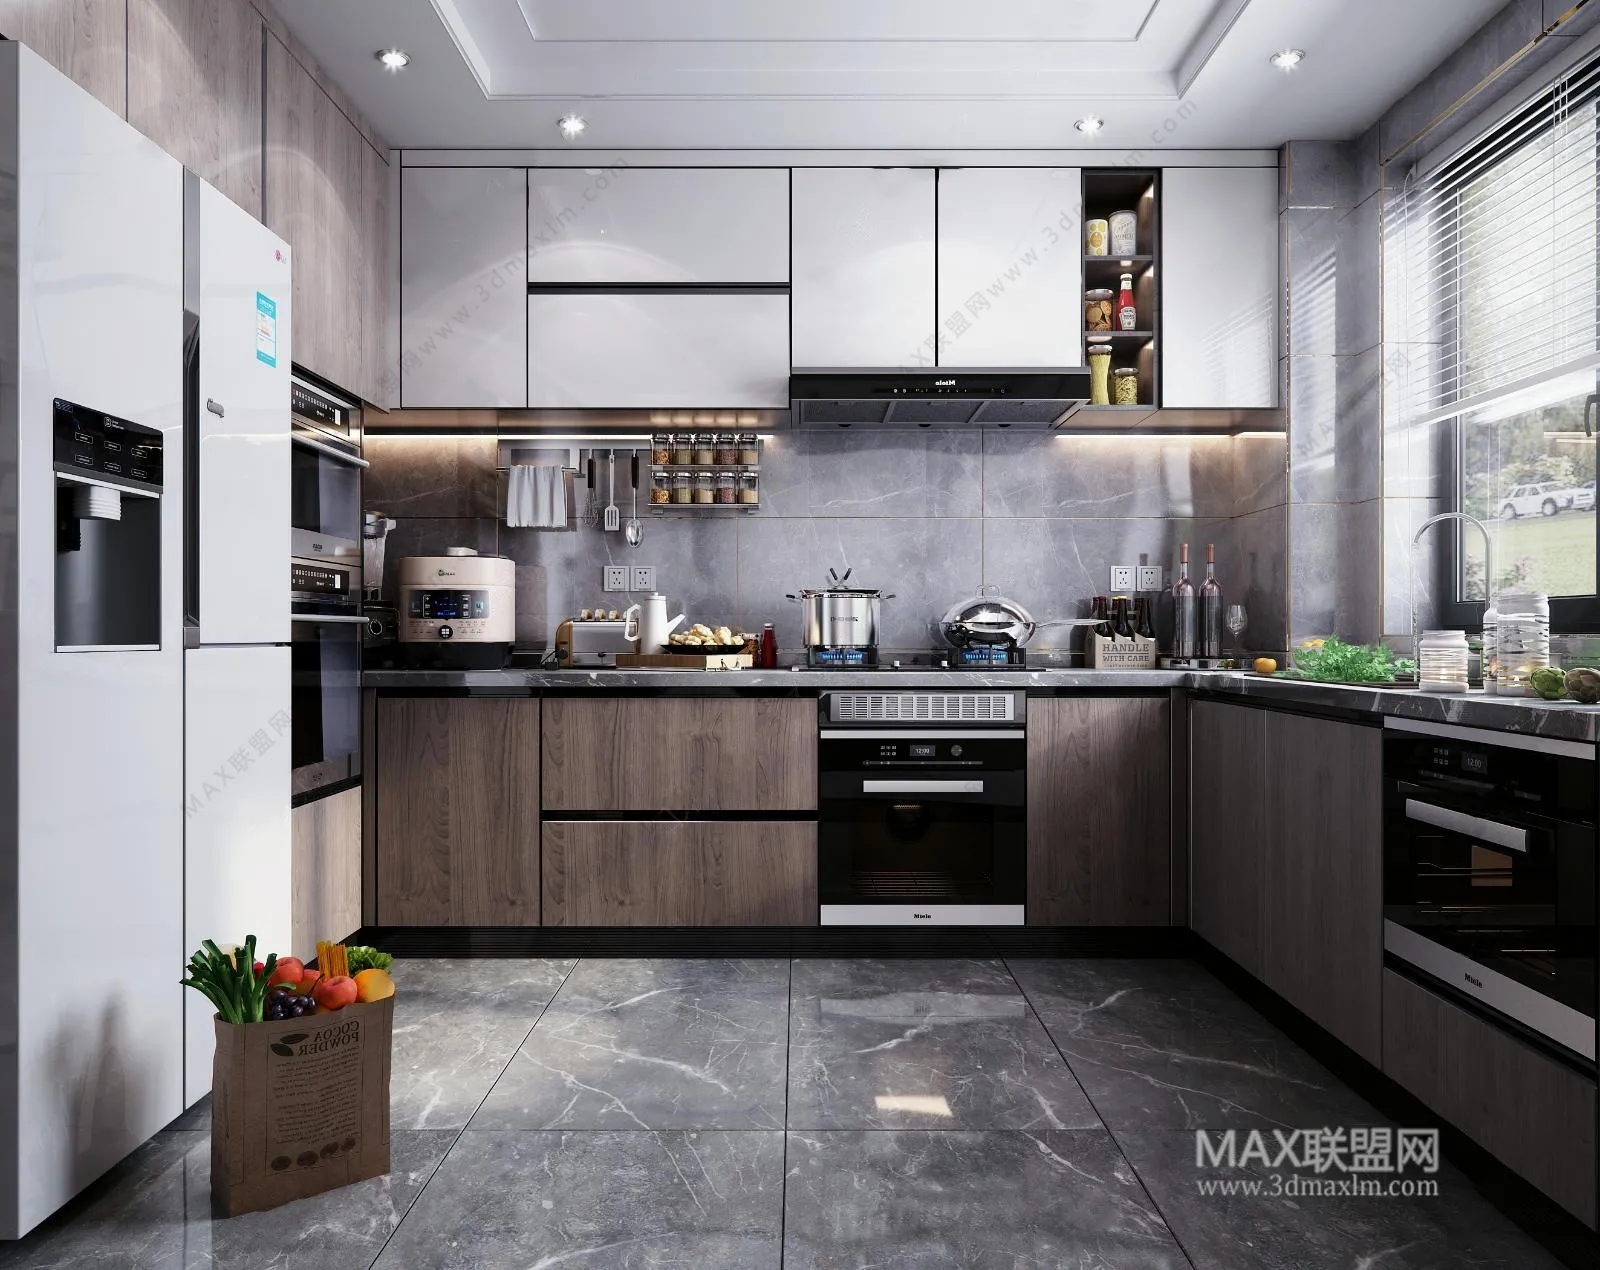 Kitchen – Interior Design – Modern Design – 004